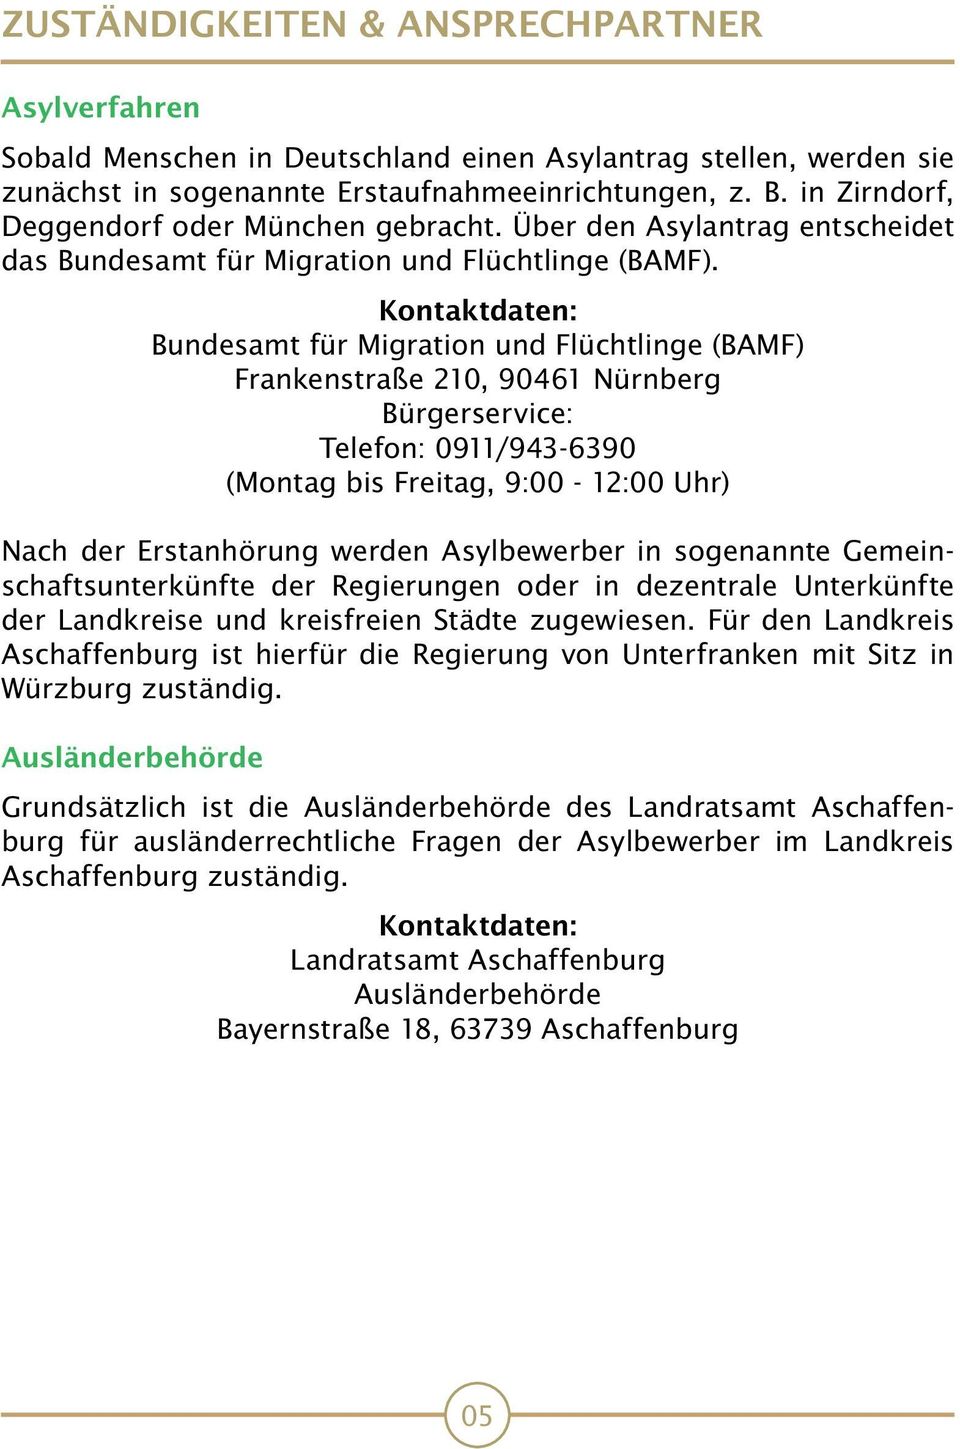 Kontaktdaten: Bundesamt für Migration und Flüchtlinge (BAMF) Frankenstraße 210, 90461 Nürnberg Bürgerservice: Telefon: 0911/943-6390 (Montag bis Freitag, 9:00-12:00 Uhr) Nach der Erstanhörung werden